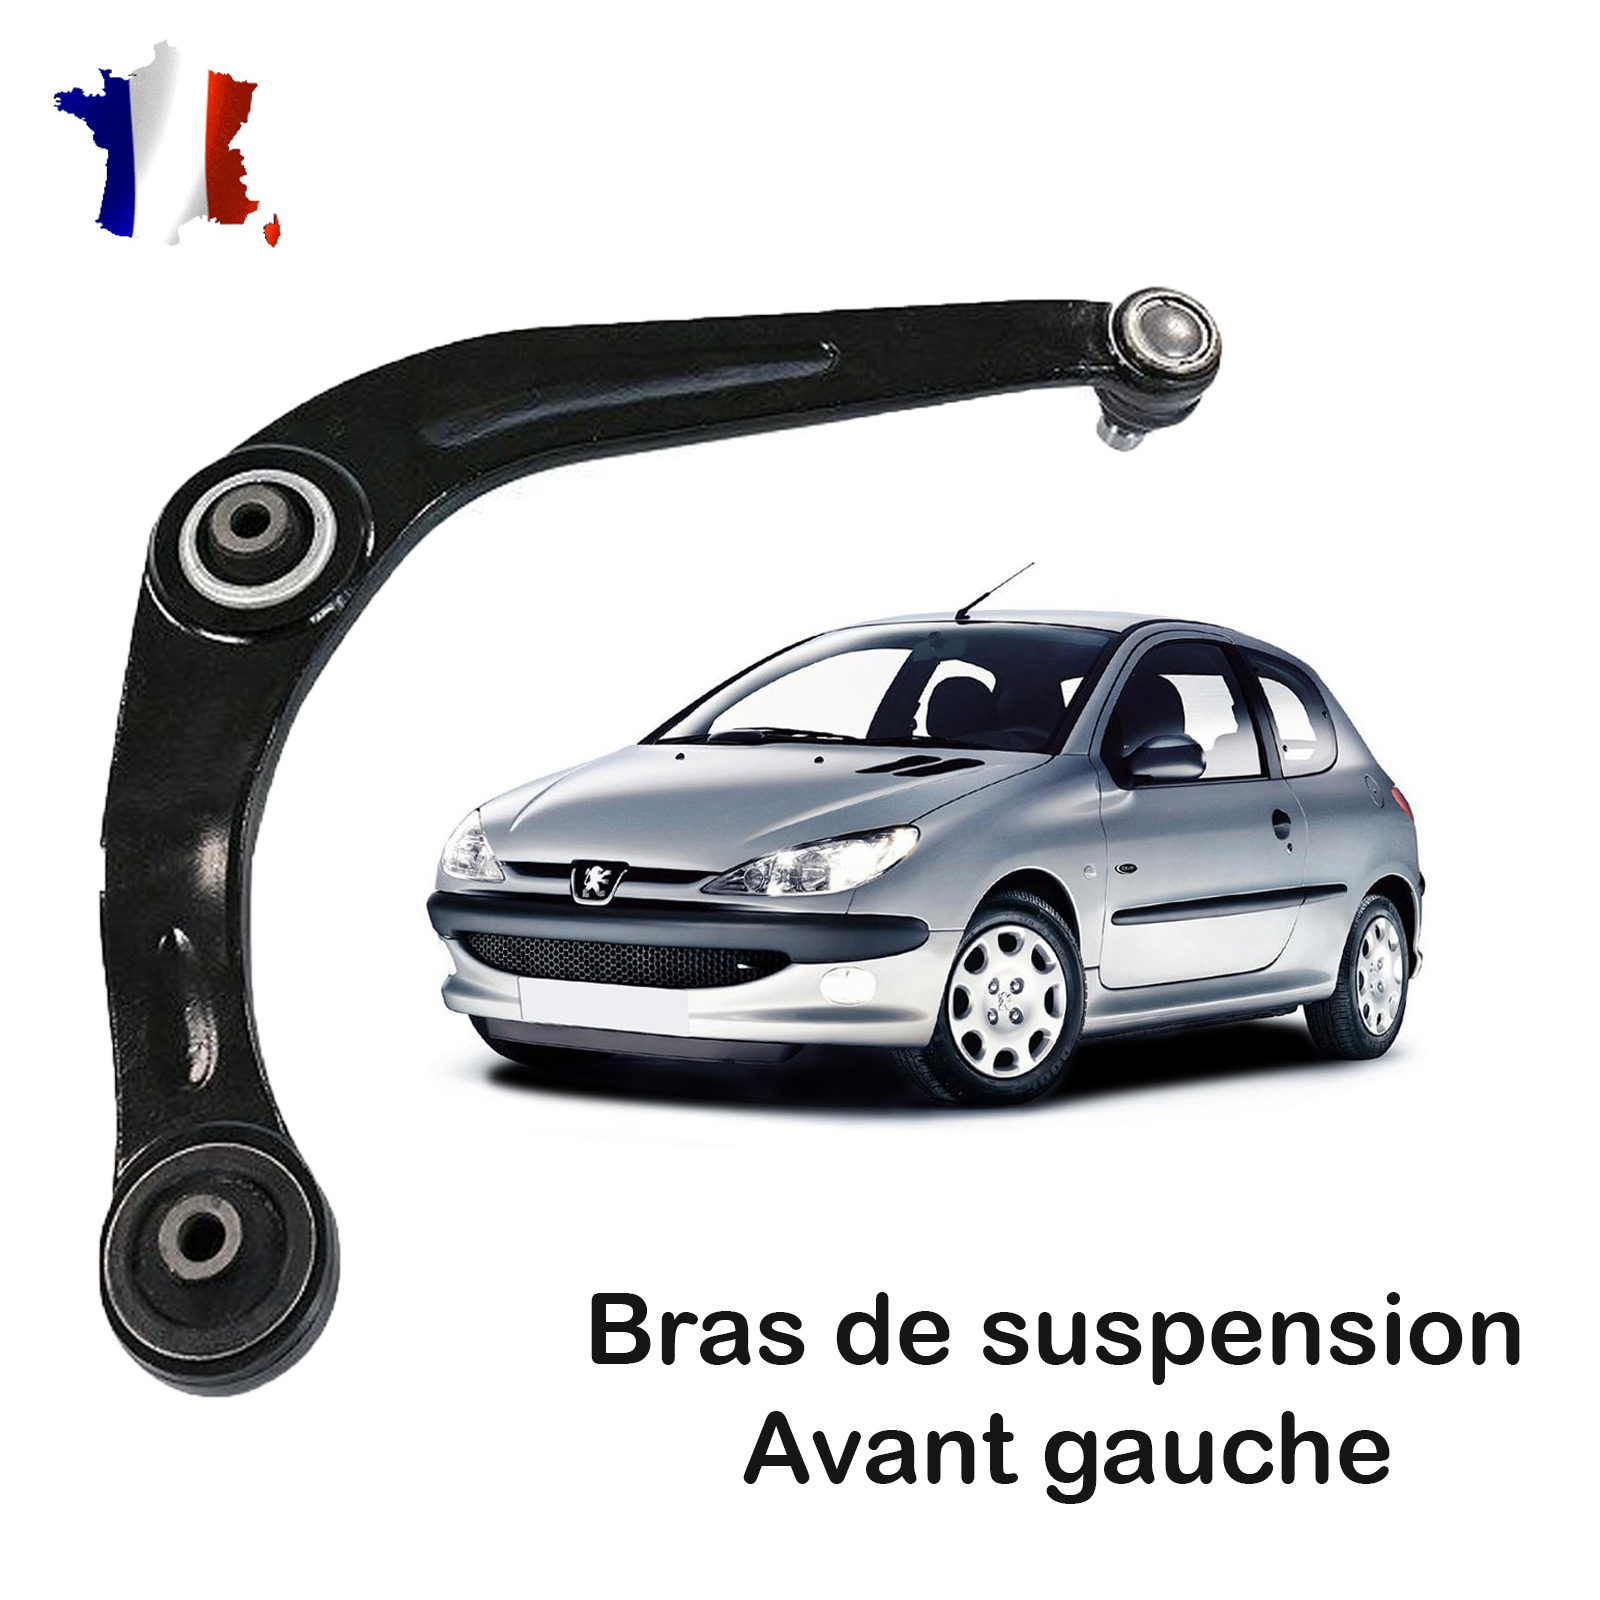 Triangle bras de suspension avant droit Ocap 0380487 pour peugeot 206, buy  it just for 16.5 on our shop DGJAUTO